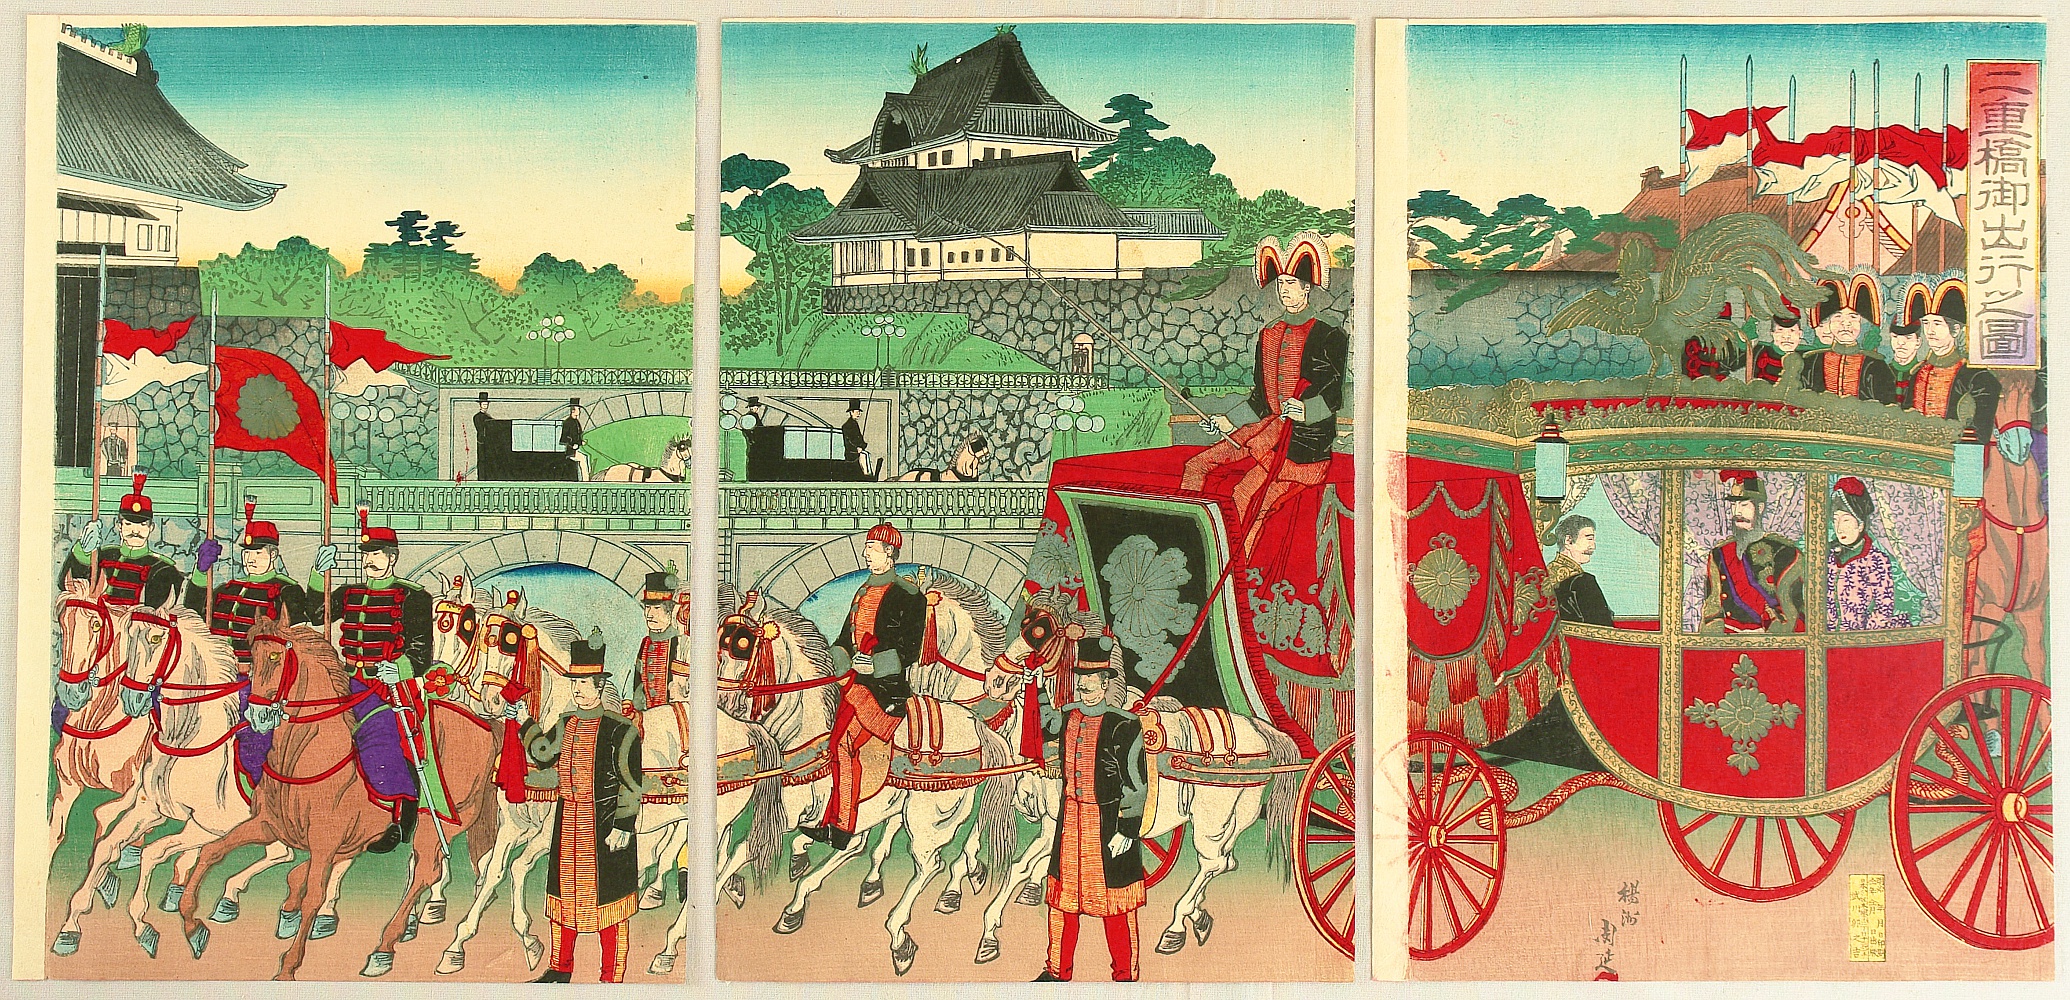 1889 г япония. Япония 19 век Мэйдзи. Гравюра императора Японии Мэйдзи. Революция Мэйдзи 1868-1889. Коронация императора Мэйдзи.